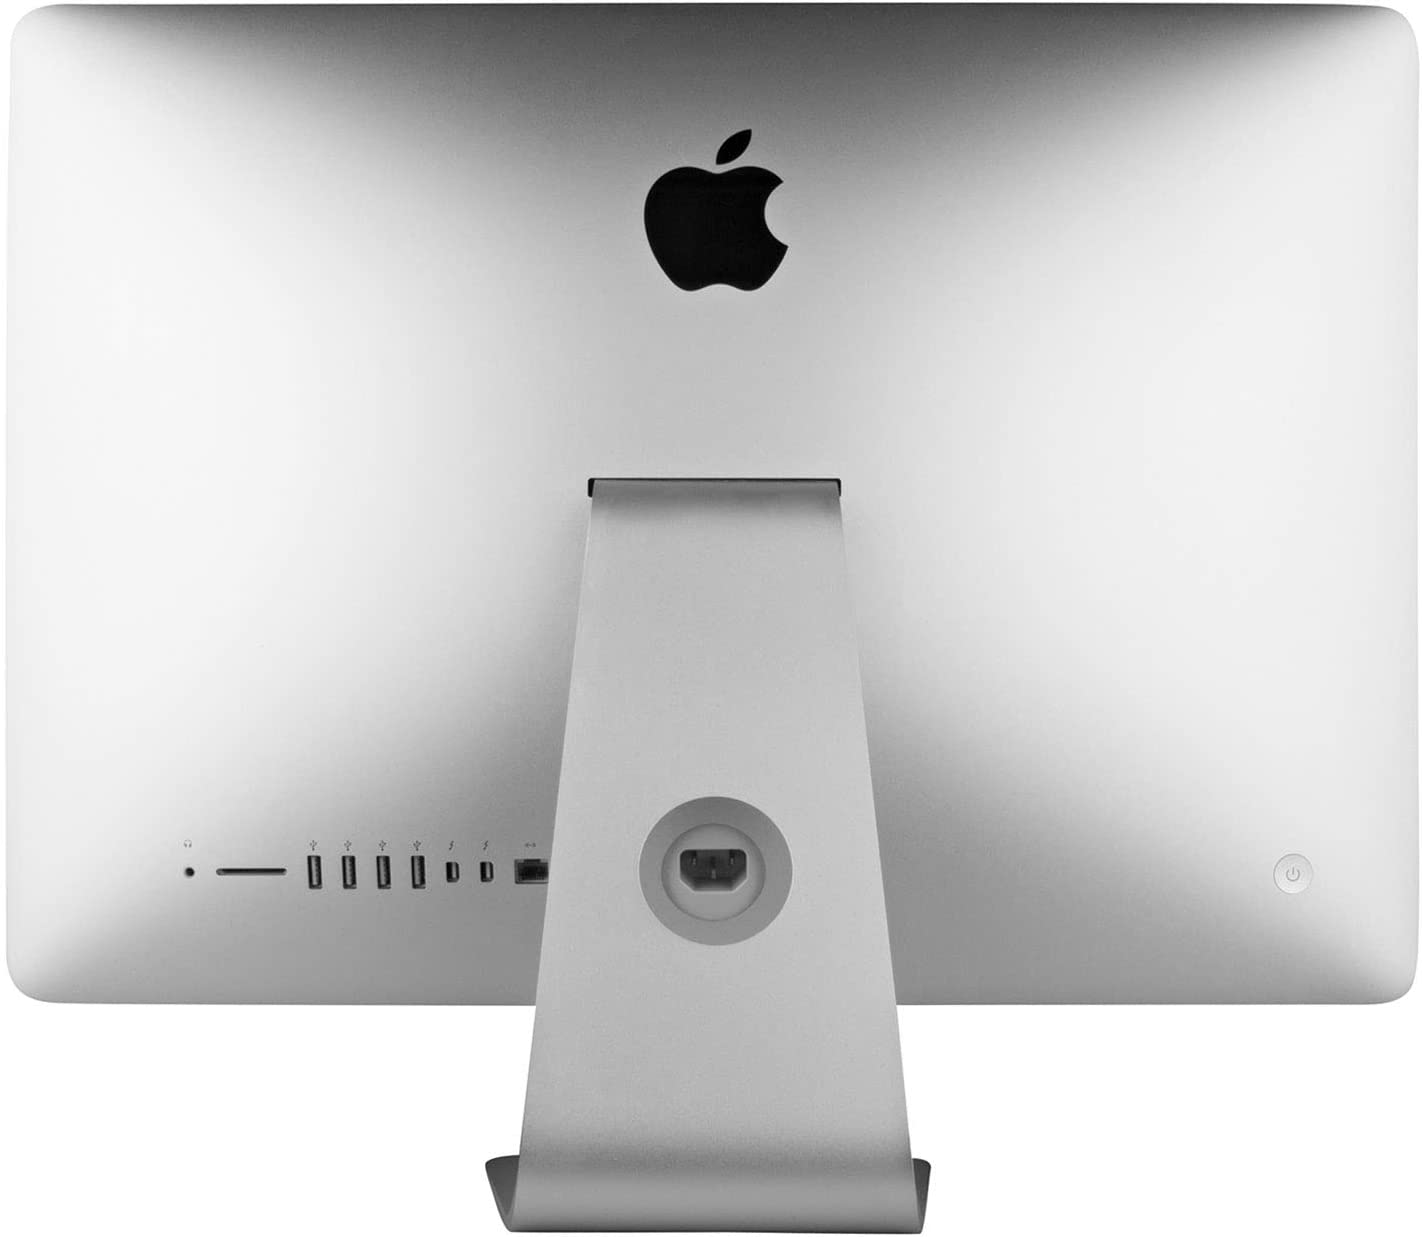 iMac ME699LL/A 21.5in Desktop (Renewed)